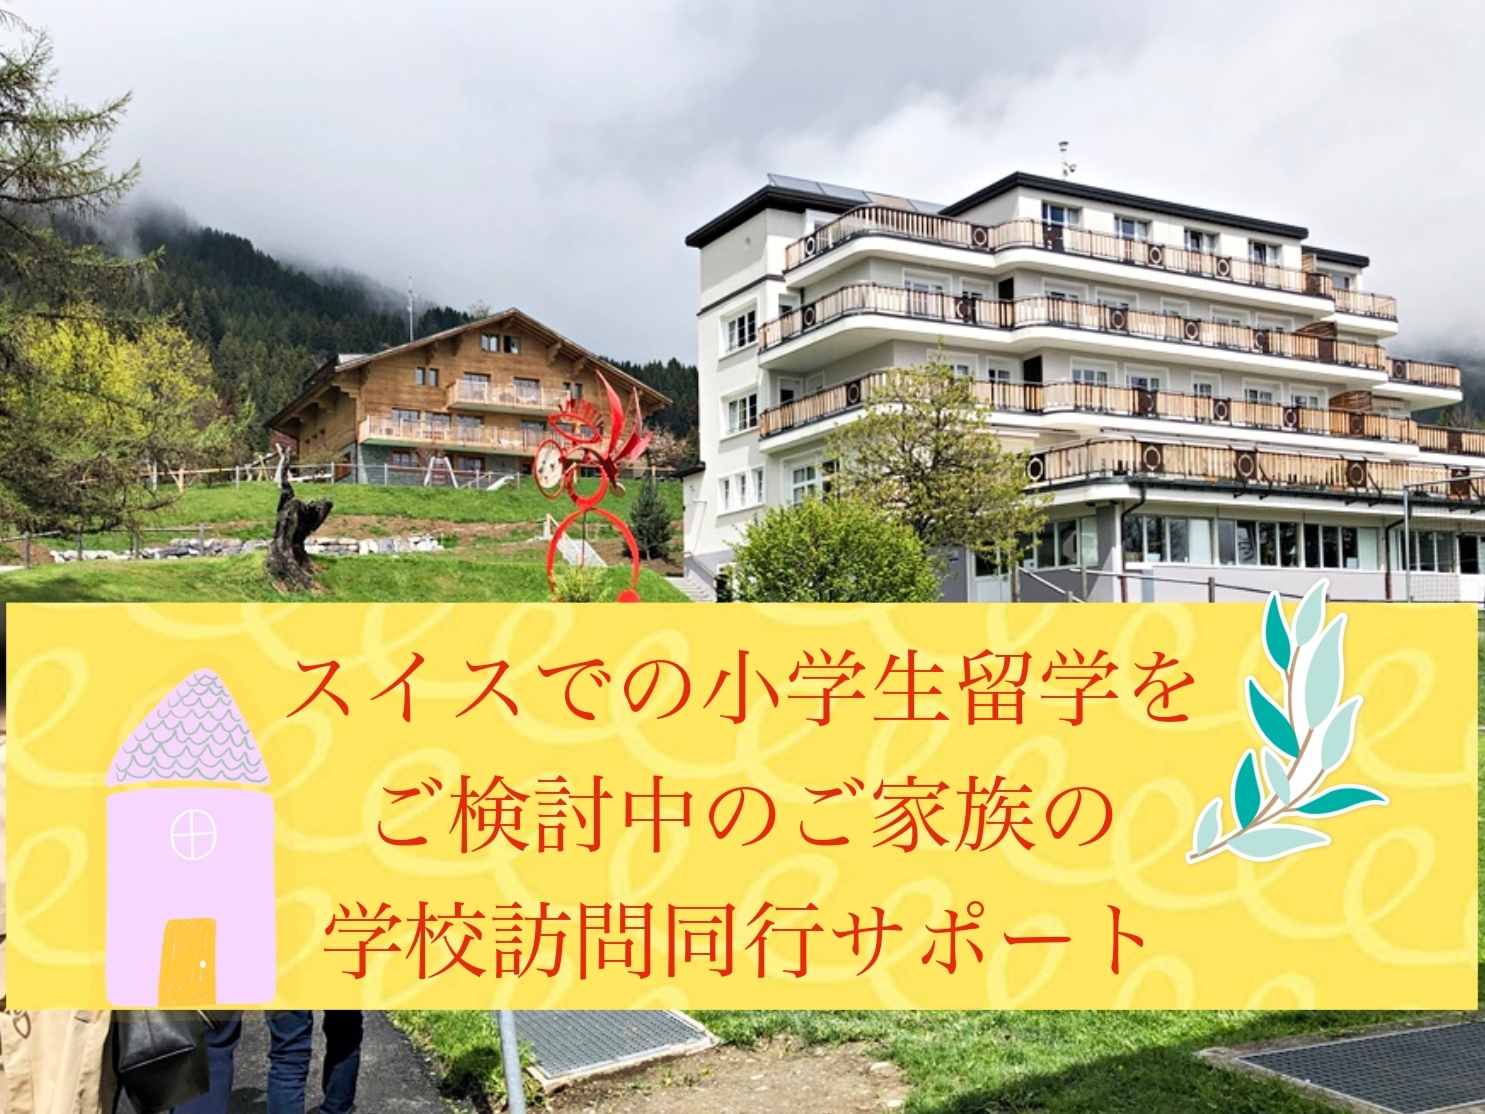 スイスでの小学生留学をご検討中のご家族の学校訪問同行サポート